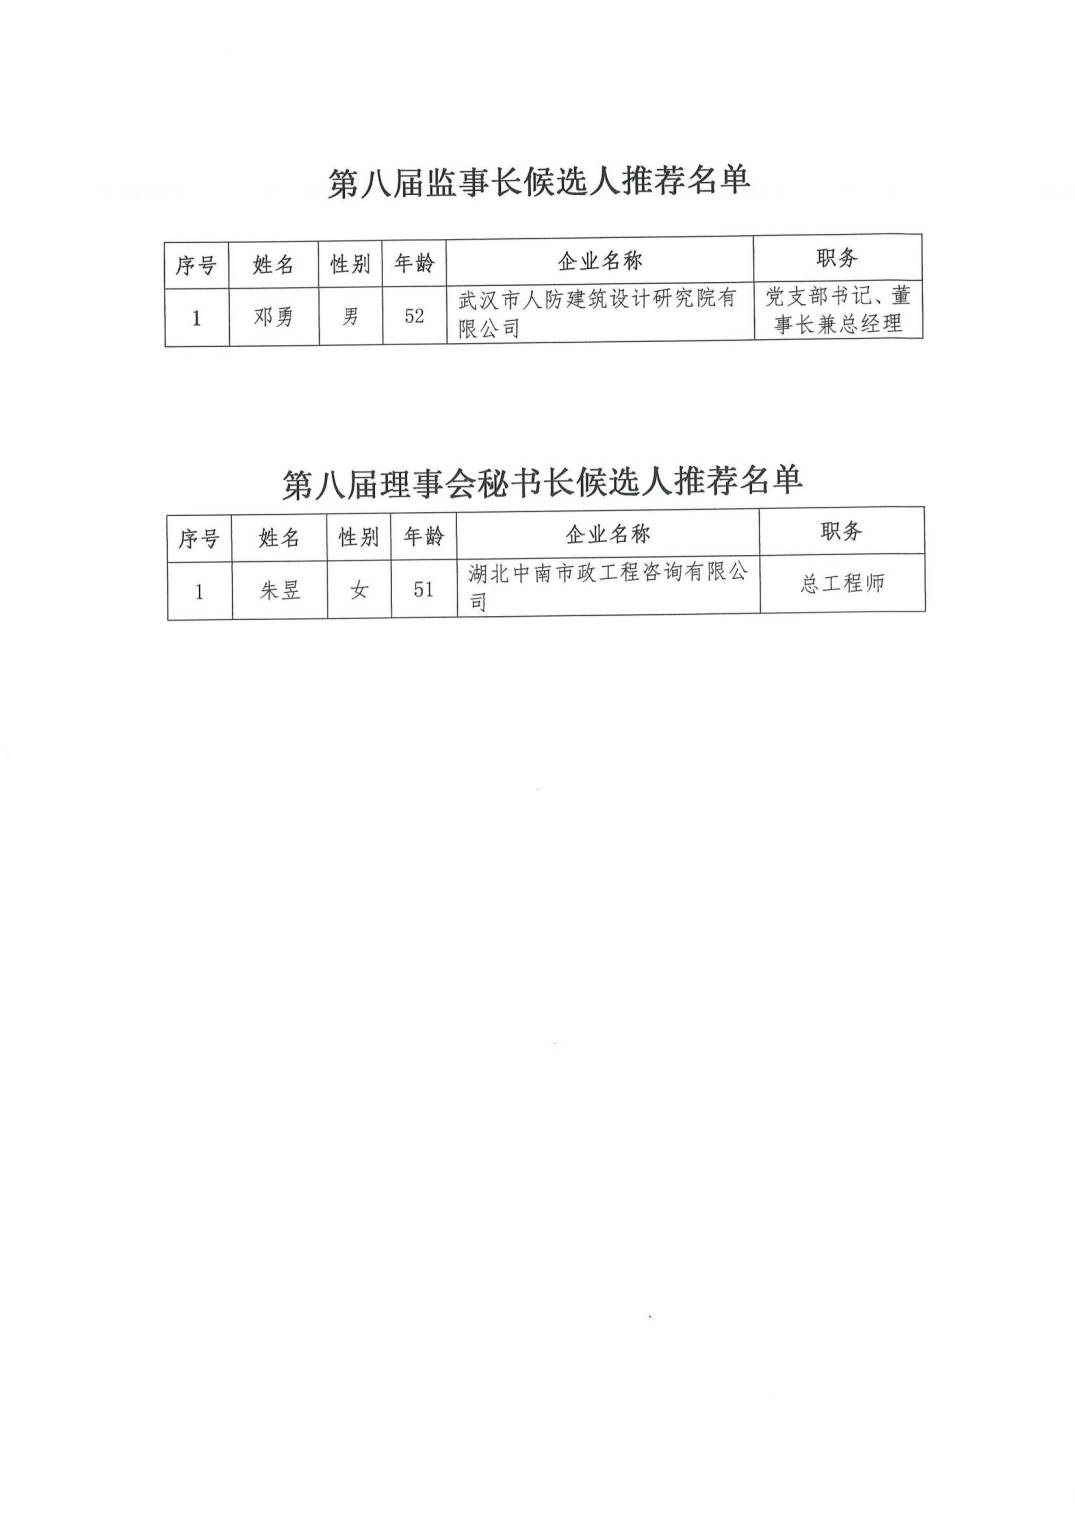 关于“武汉勘察设计协会第八届理事会会长、副会长、监事长、秘书长候选人推荐名单”的公示